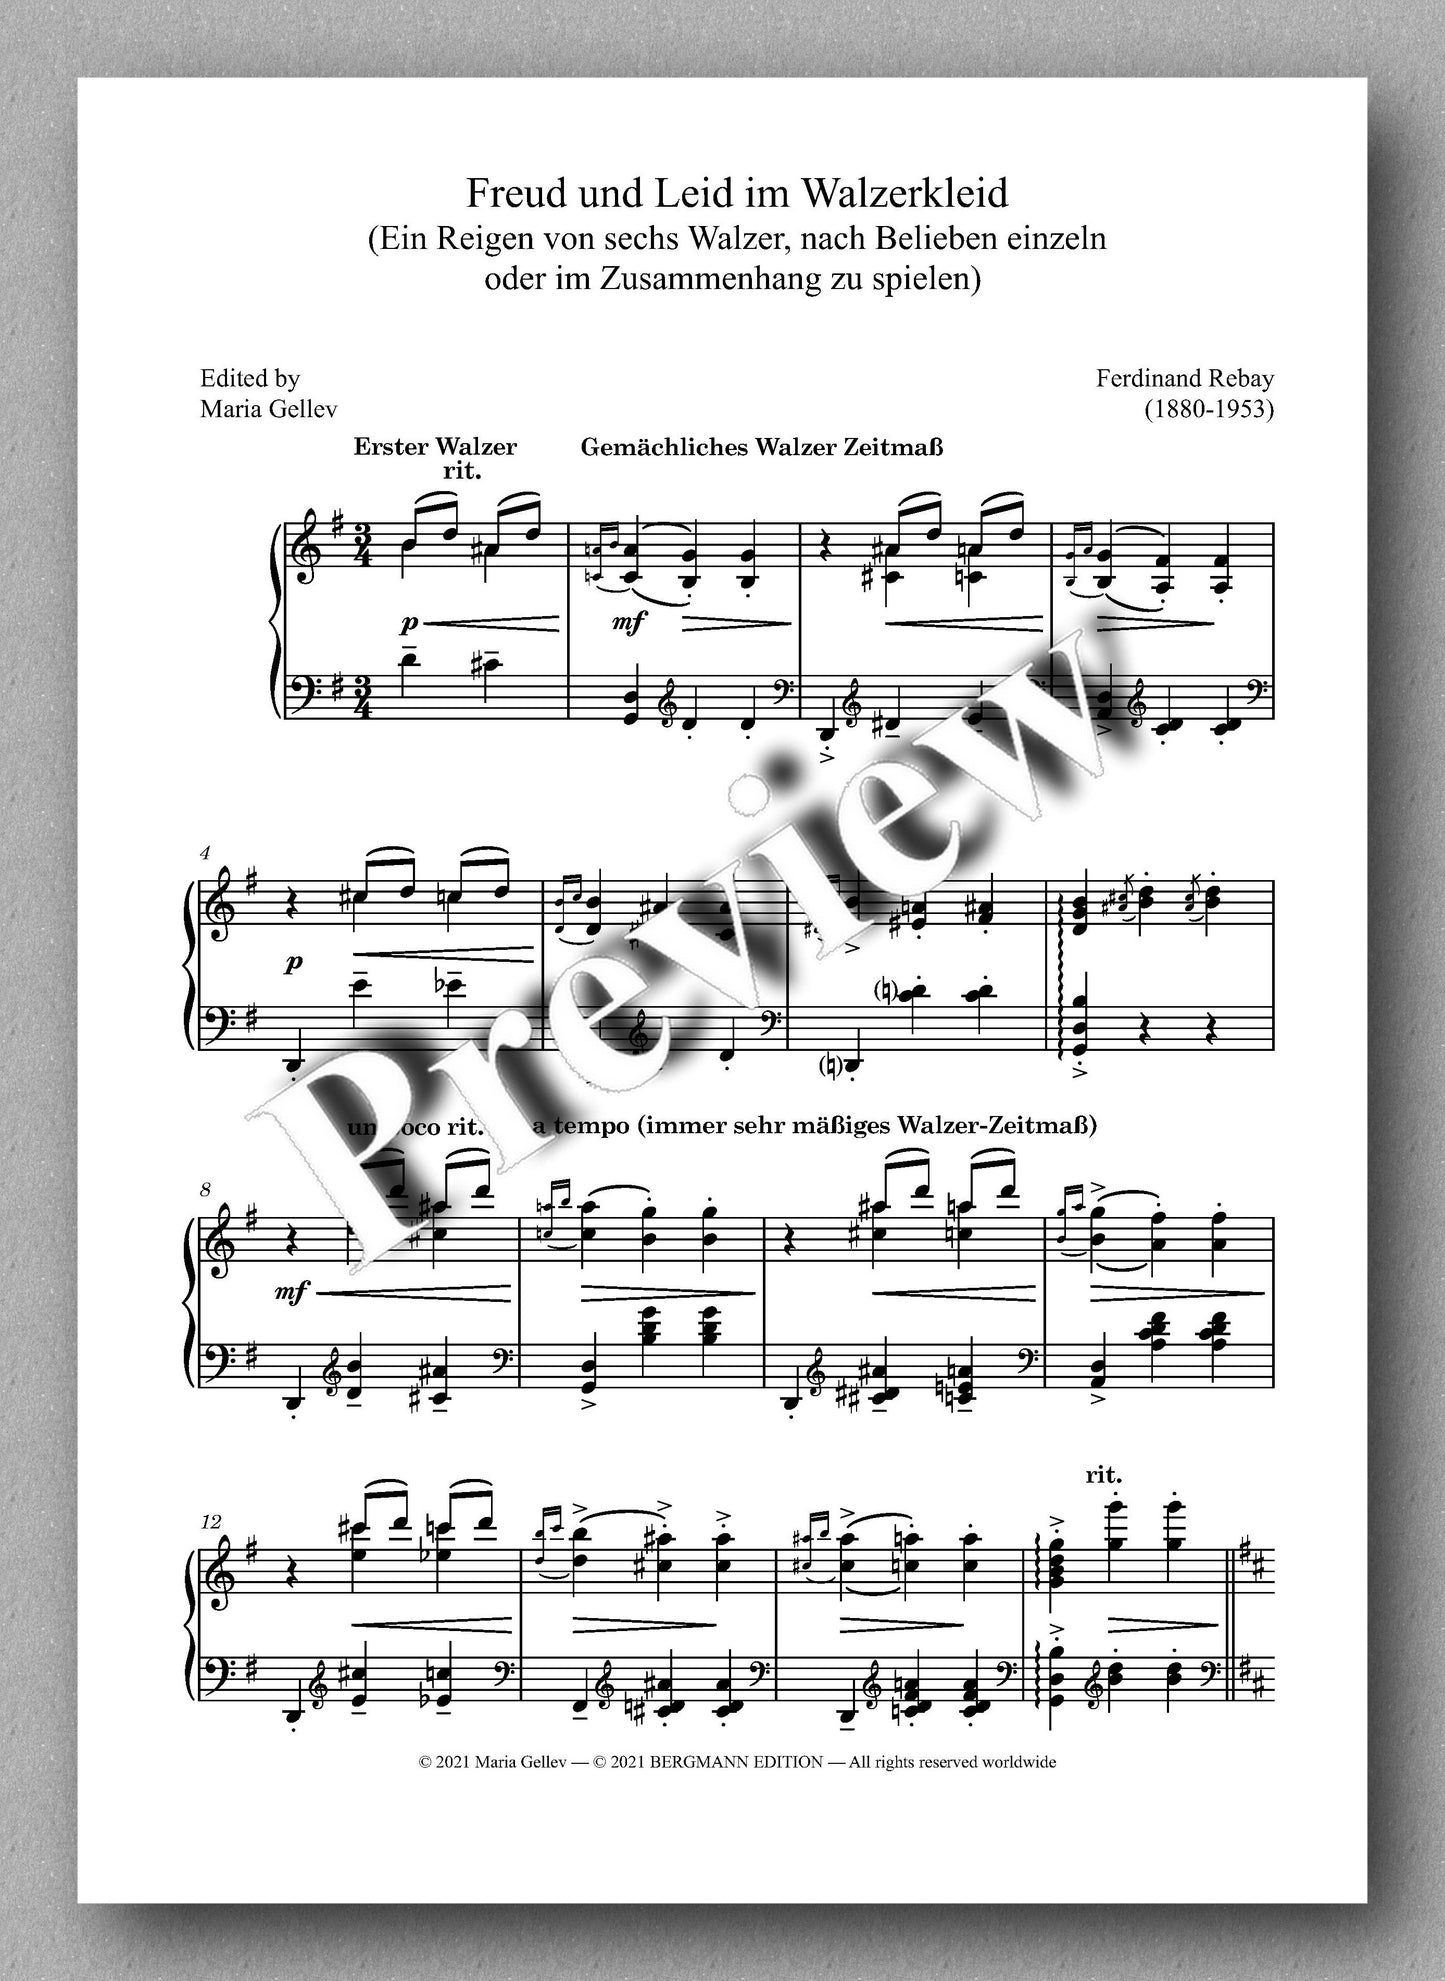 Rebay, Klavier No. 6, Freud und Leid im Walzerkleid - music score 1